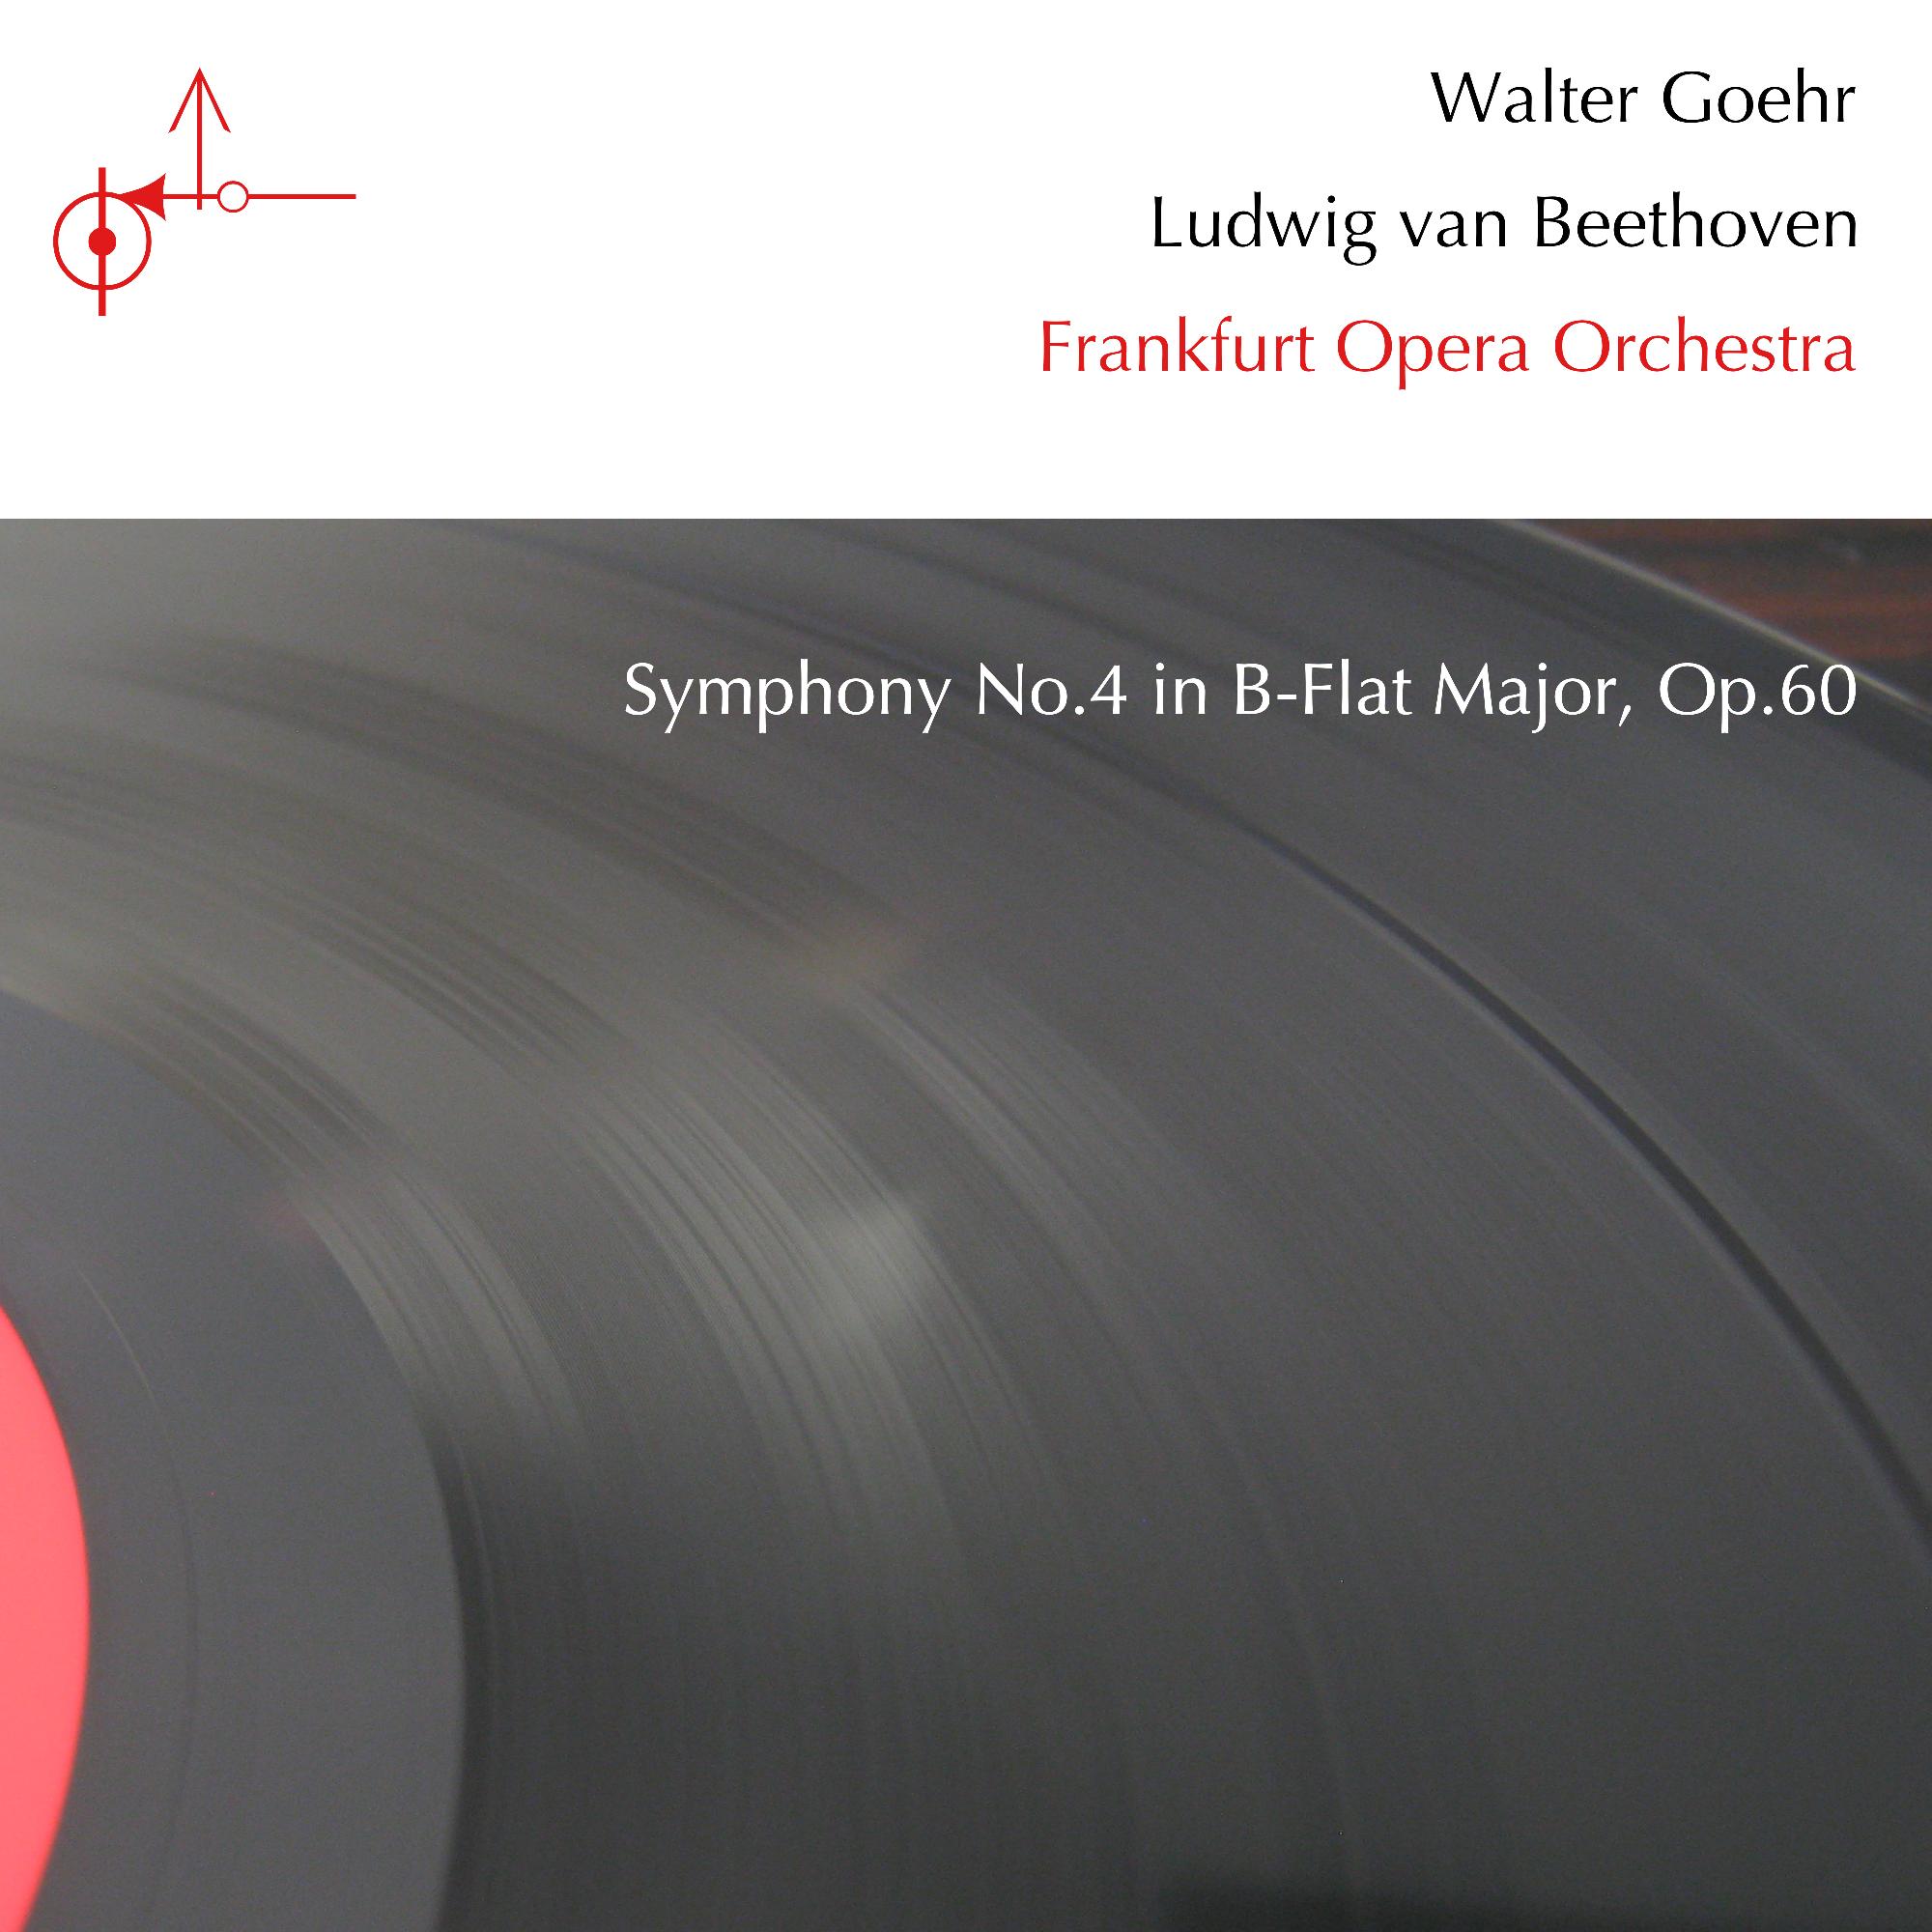 Symphony No. 4 in B-Flat Major, Op. 60: VI. Allegro ma non troppo